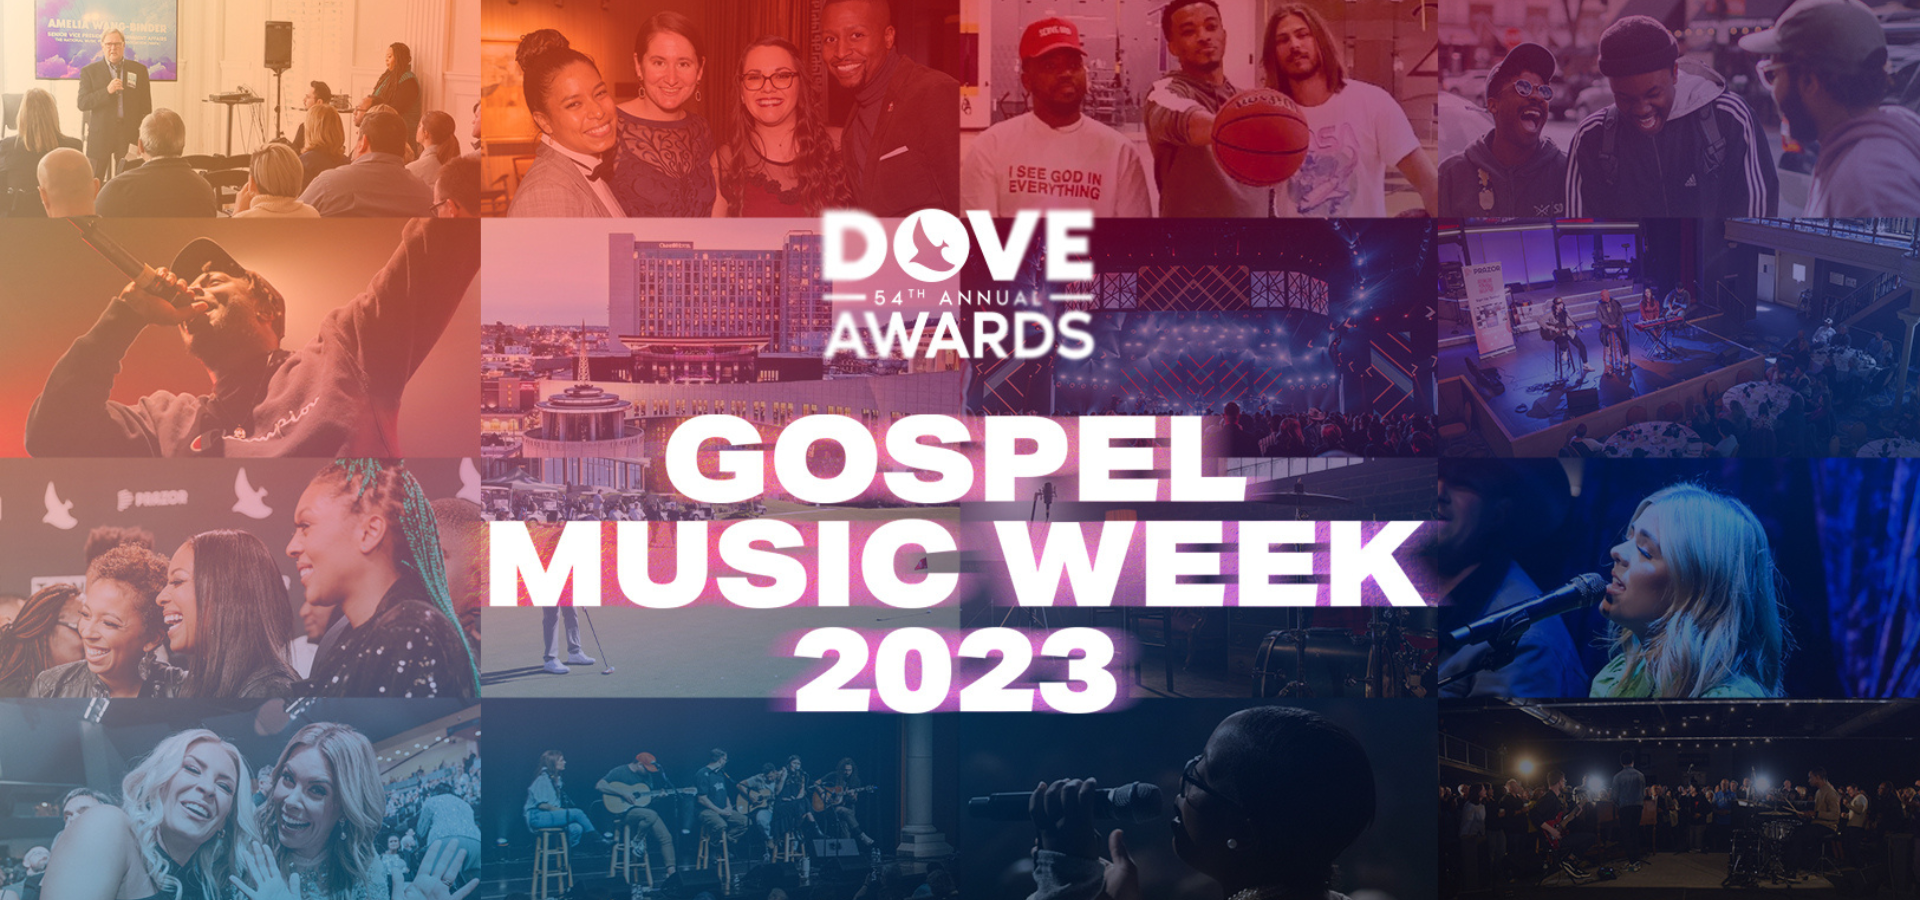 Announcing Gospel Music Week 2023